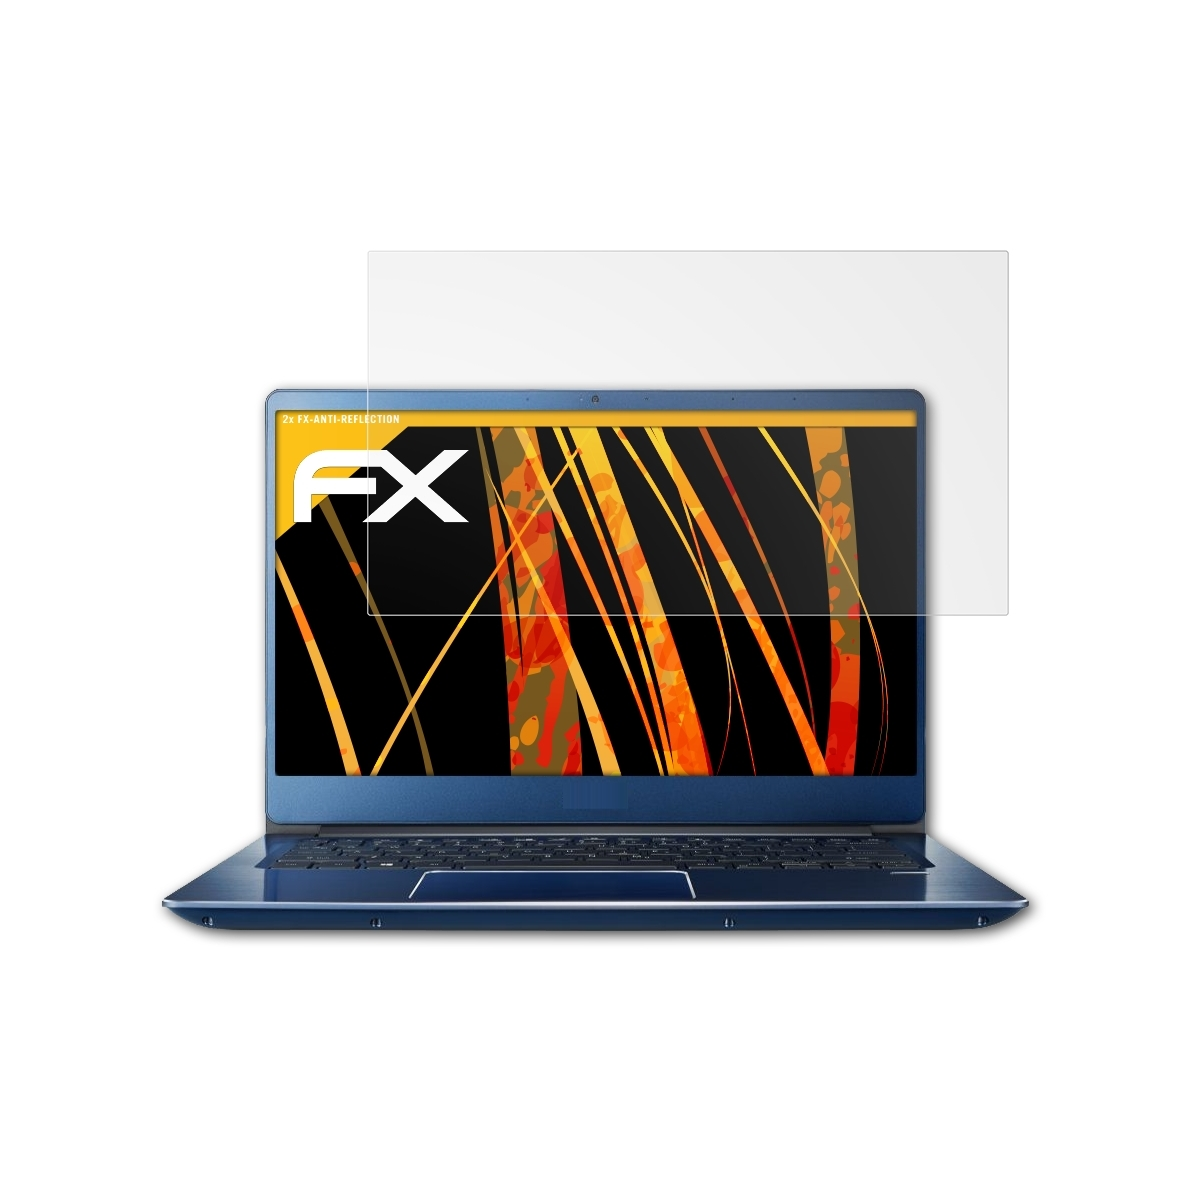 ATFOLIX 2x FX-Antireflex 3 (SF314-55)) Acer Swift Displayschutz(für